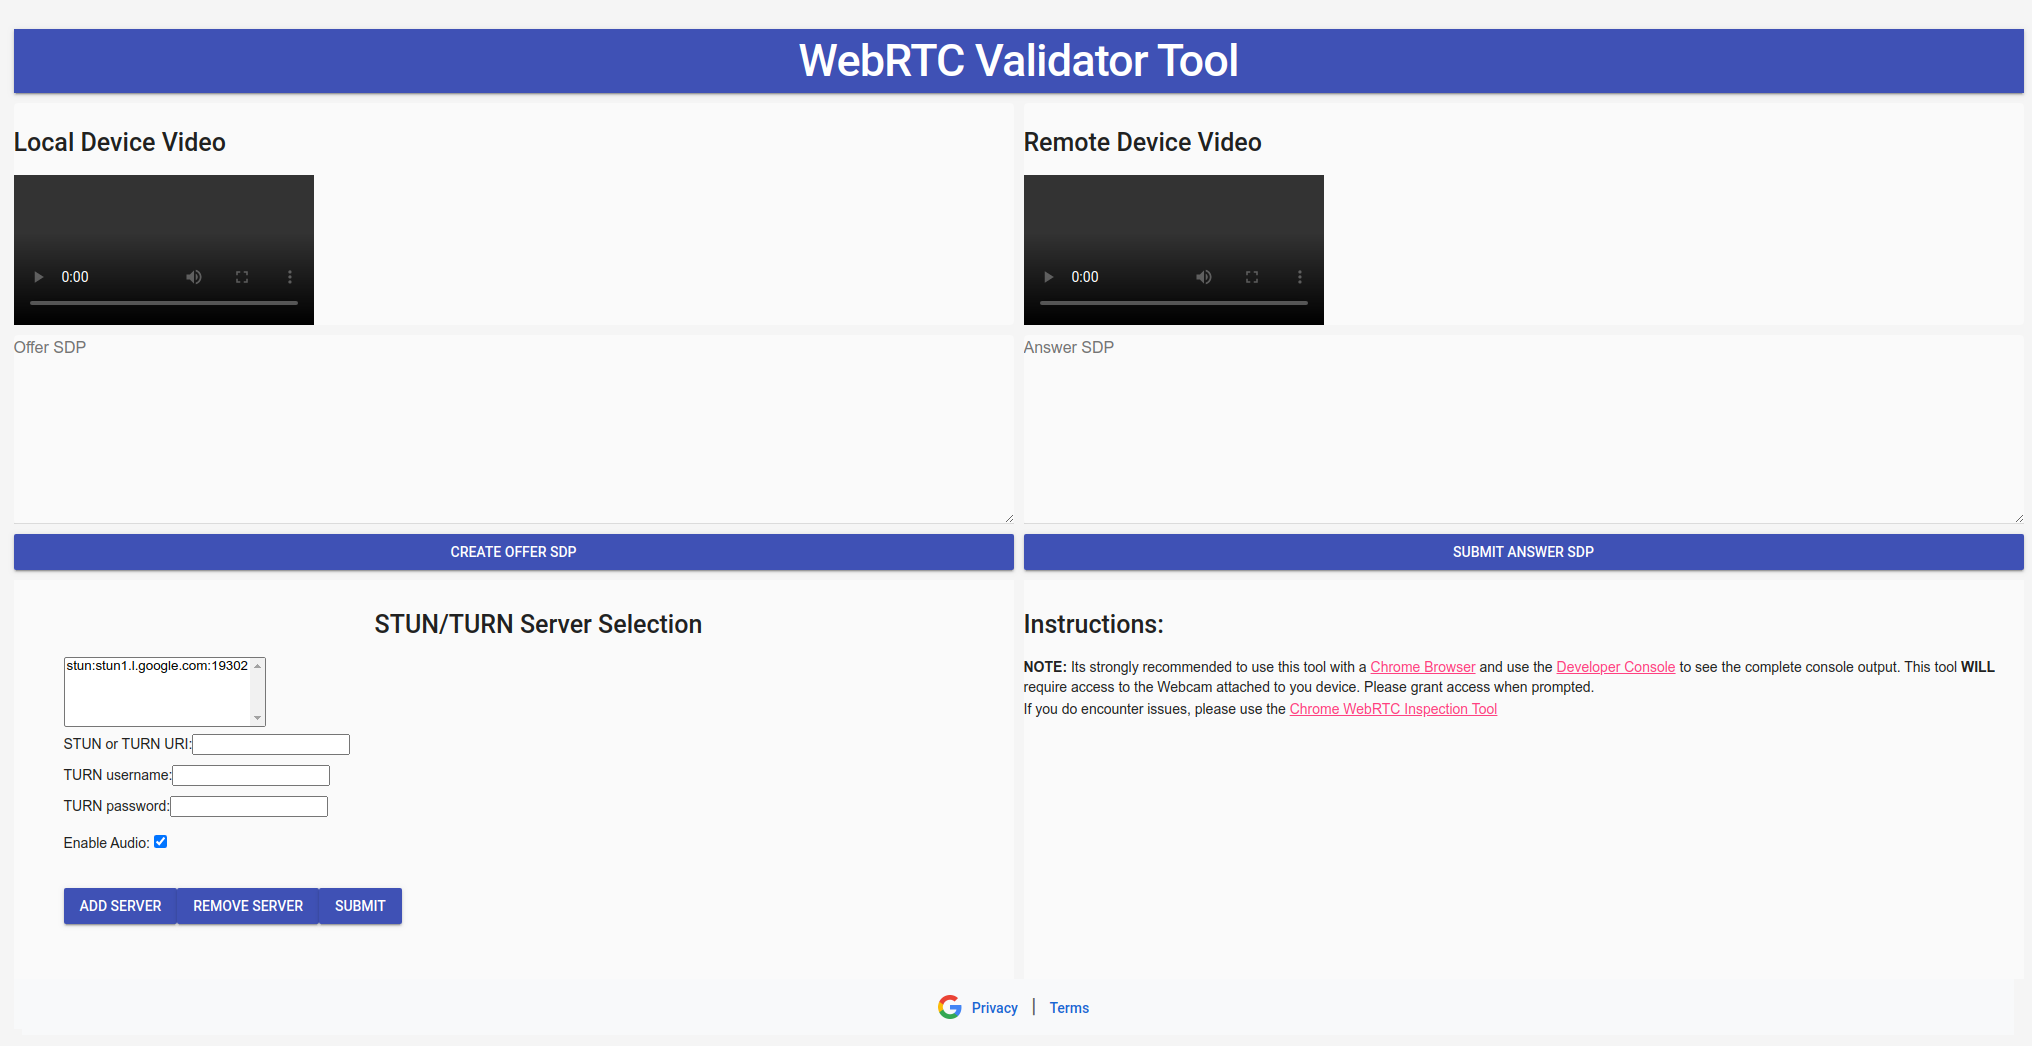 รูปภาพโดยรวมของเครื่องมือตรวจสอบ WebRTC